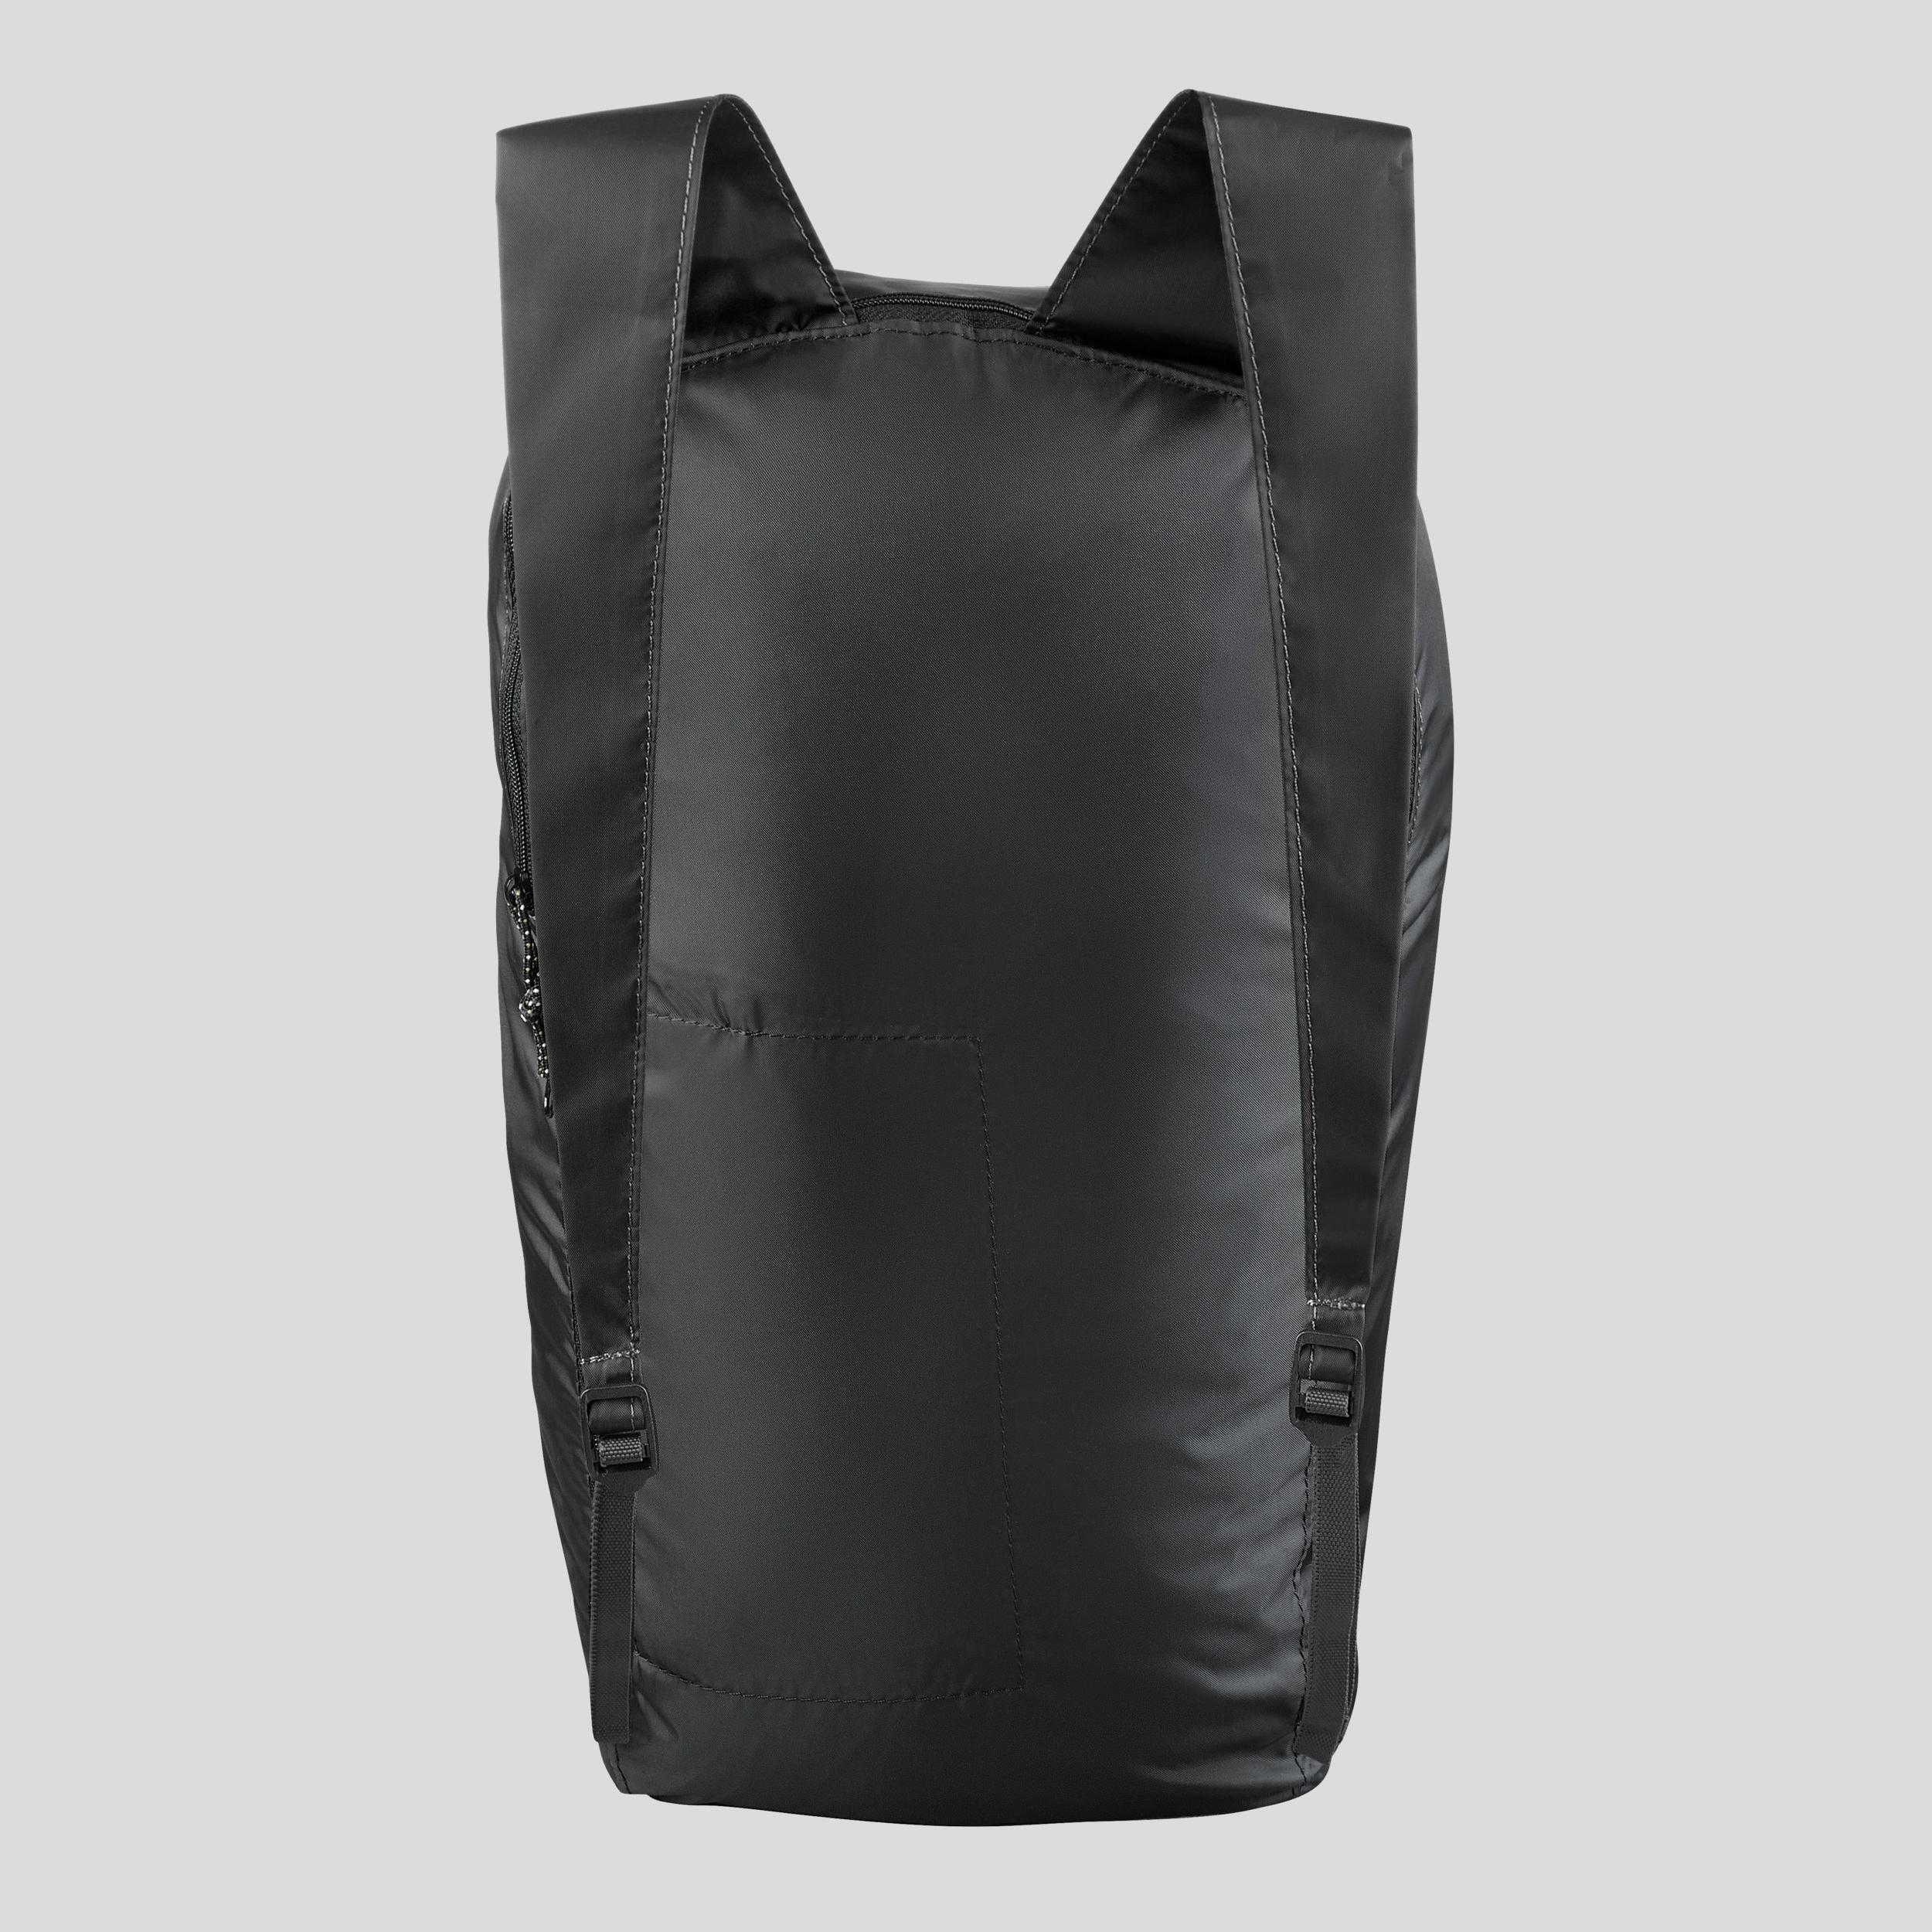 Компактный рюкзак Decathlon / Forclaz 10 литров